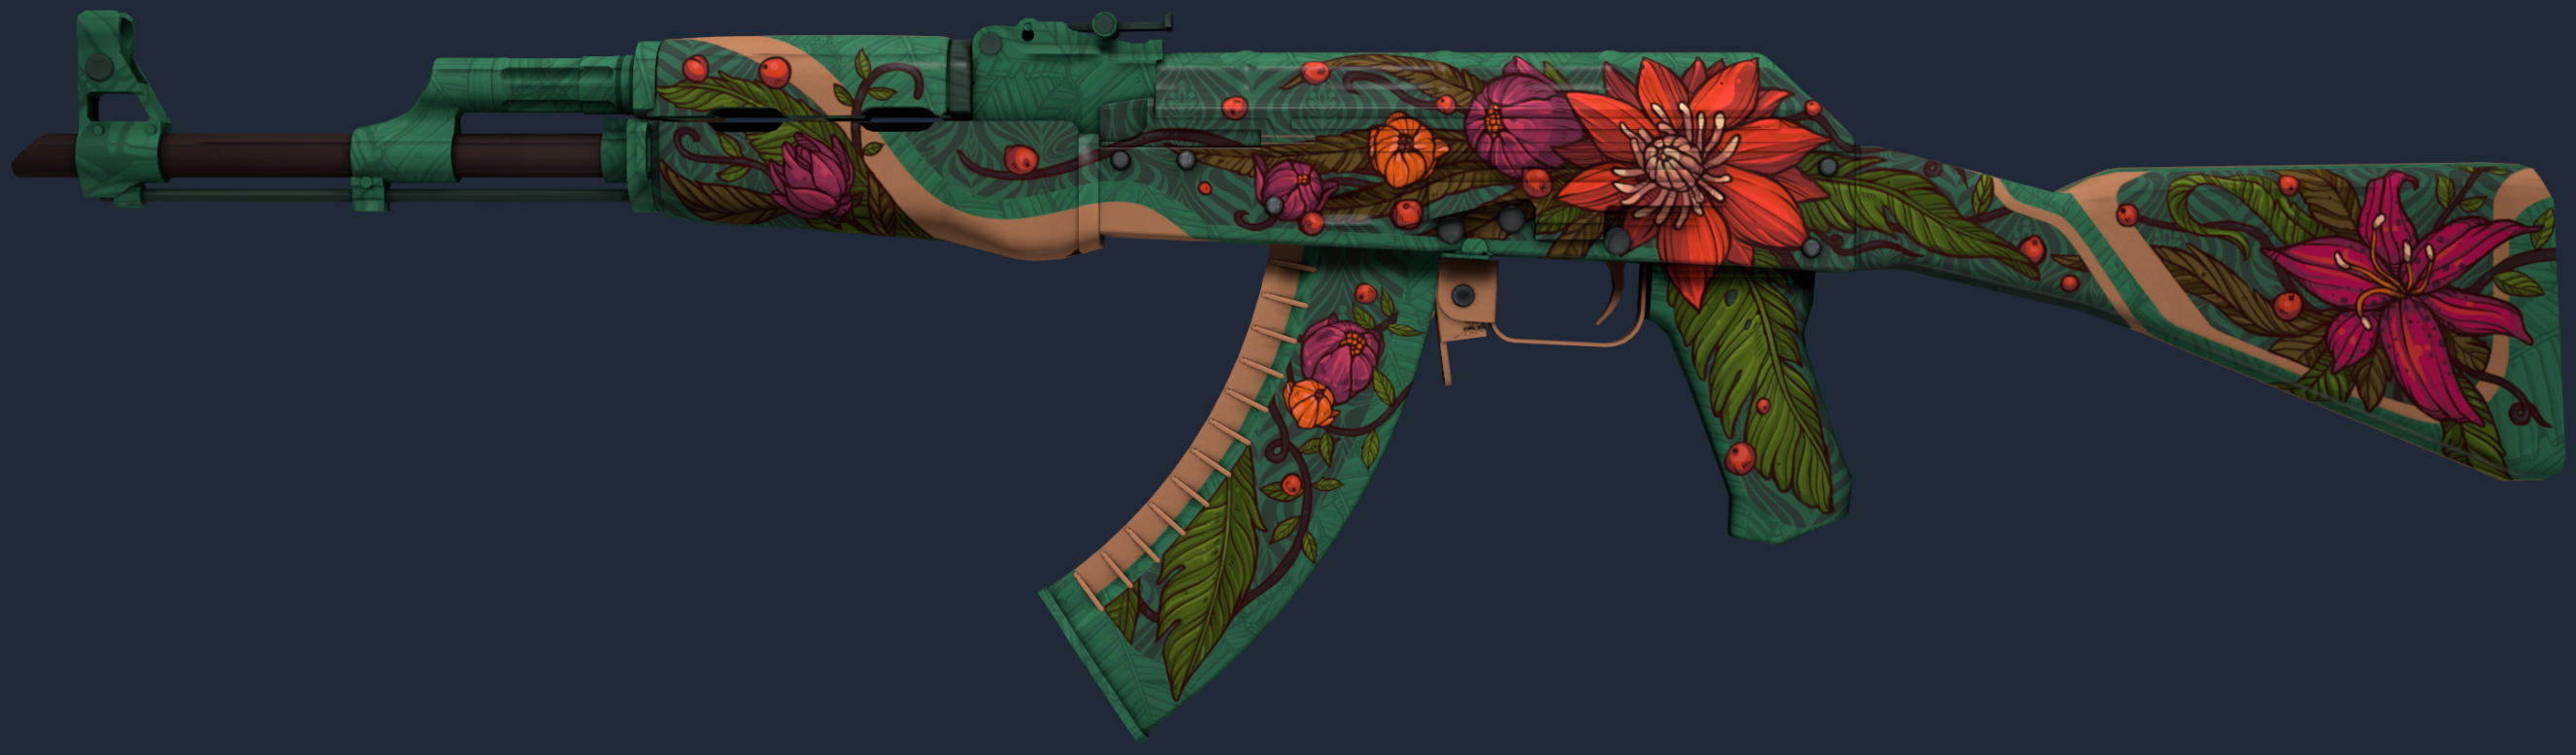 AK-47 | لوتس البرية